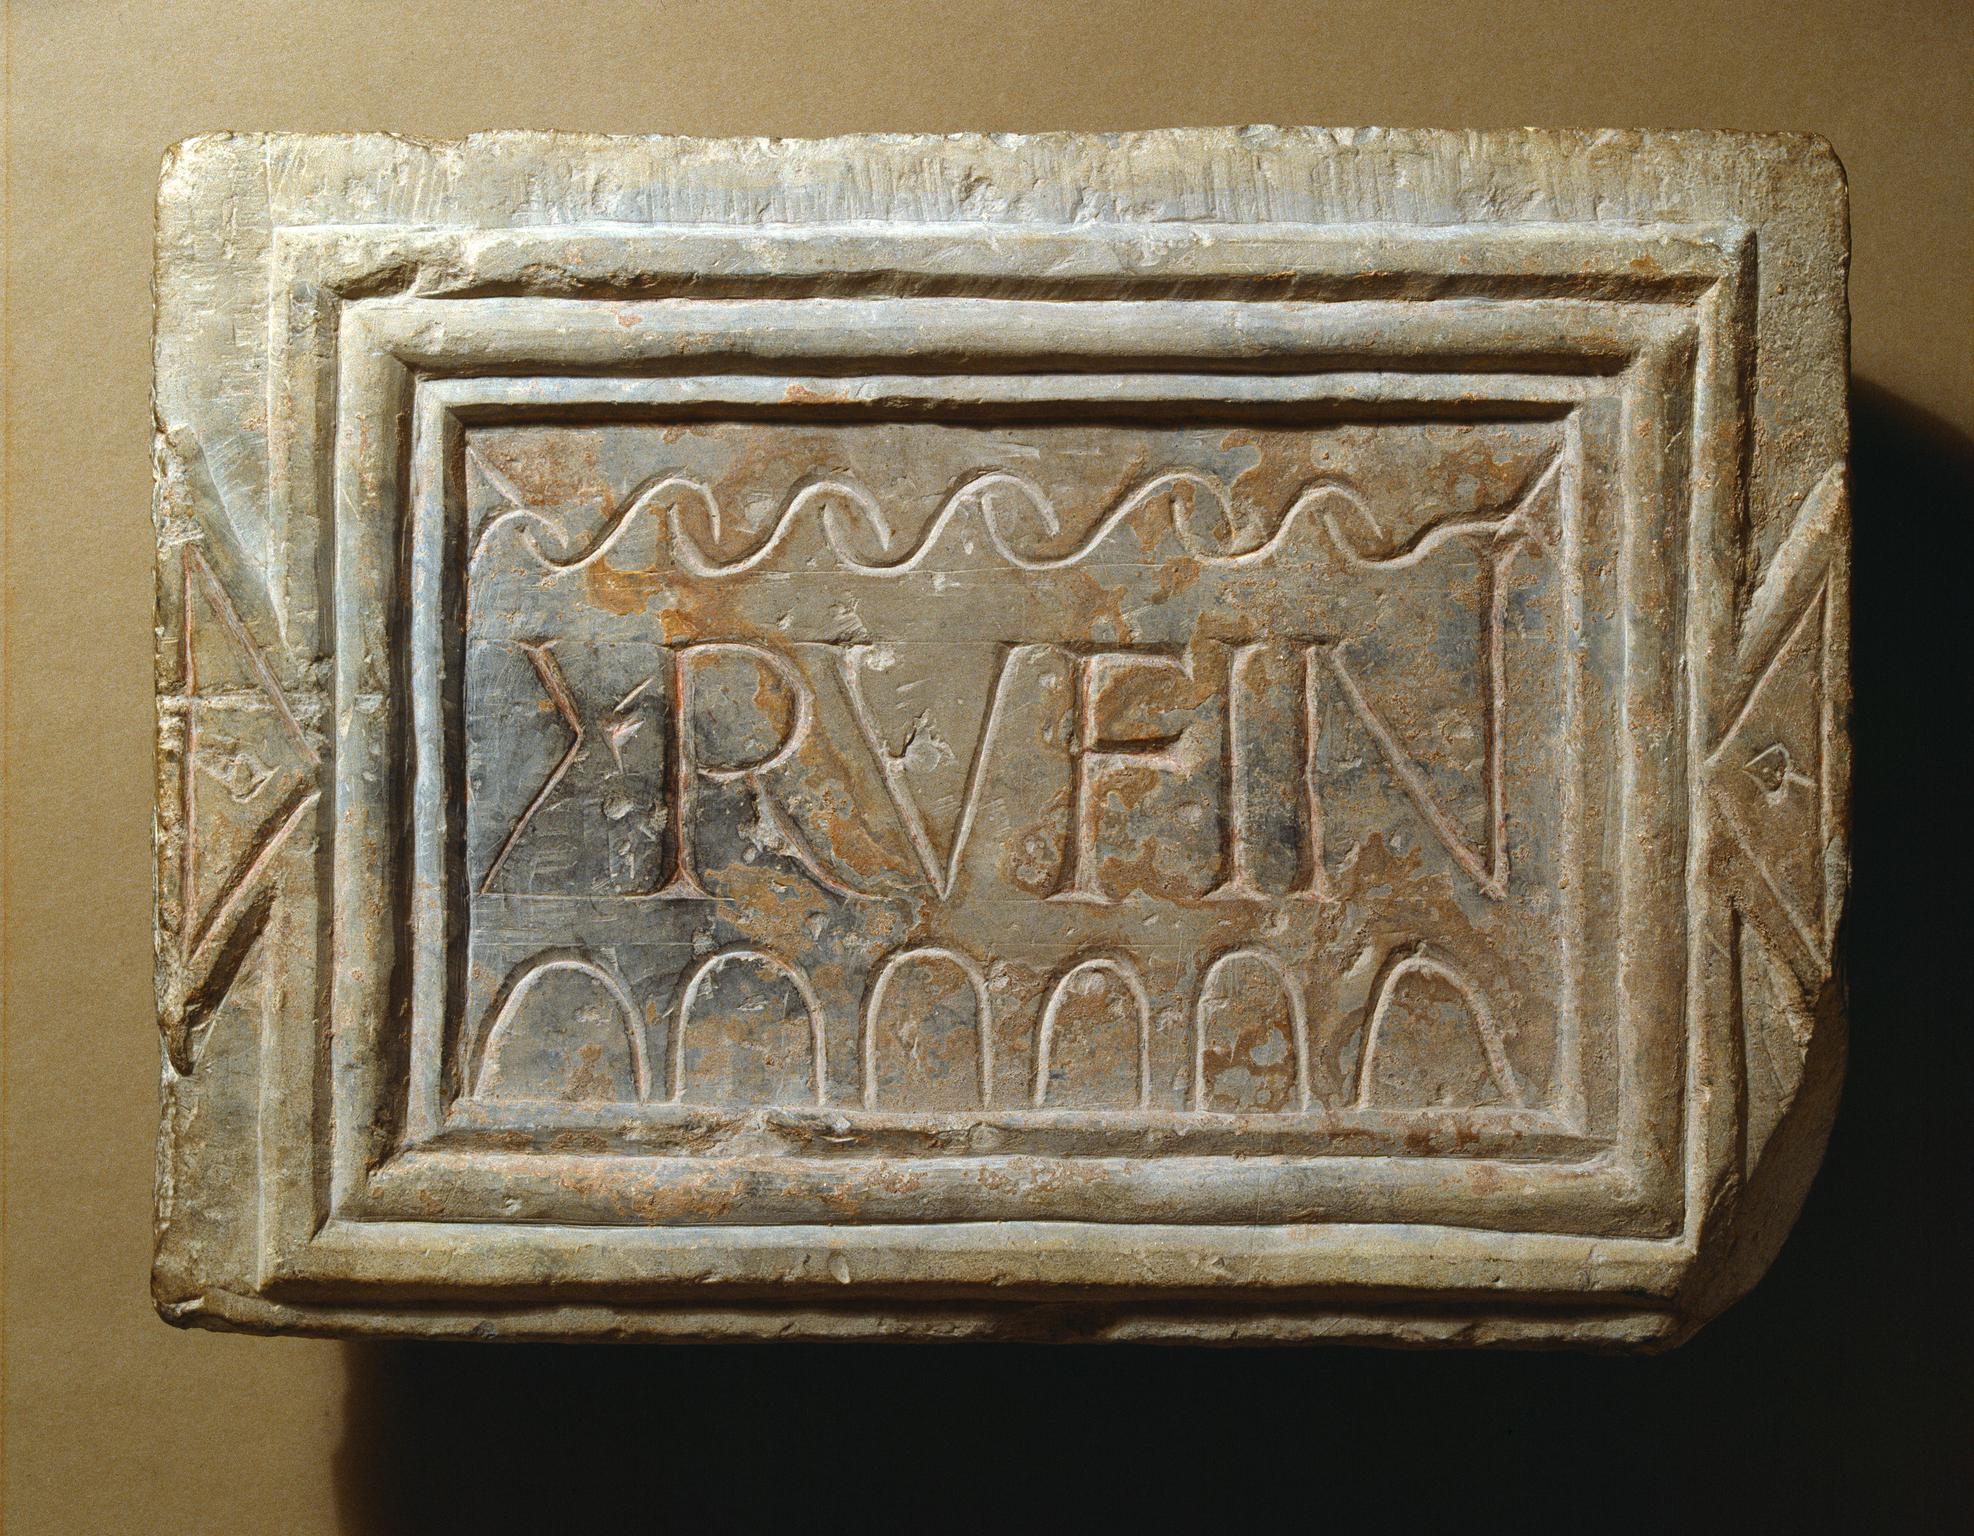 Roman stone inscription (Rufinius)